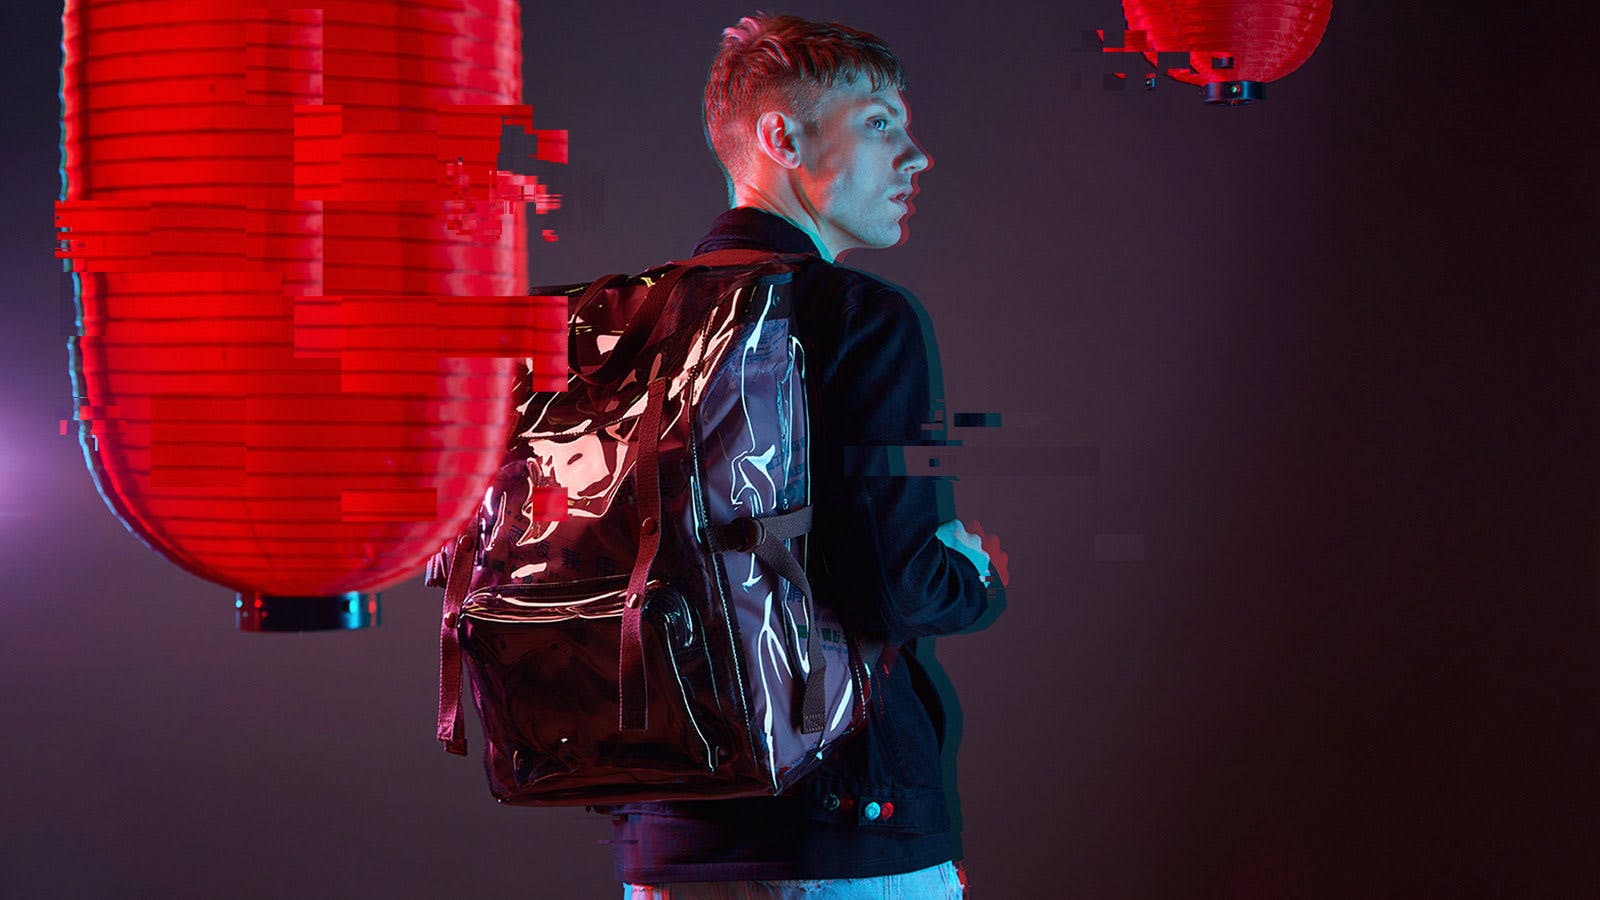 Raf Simons designs Blade Runner-style bags for Eastpak